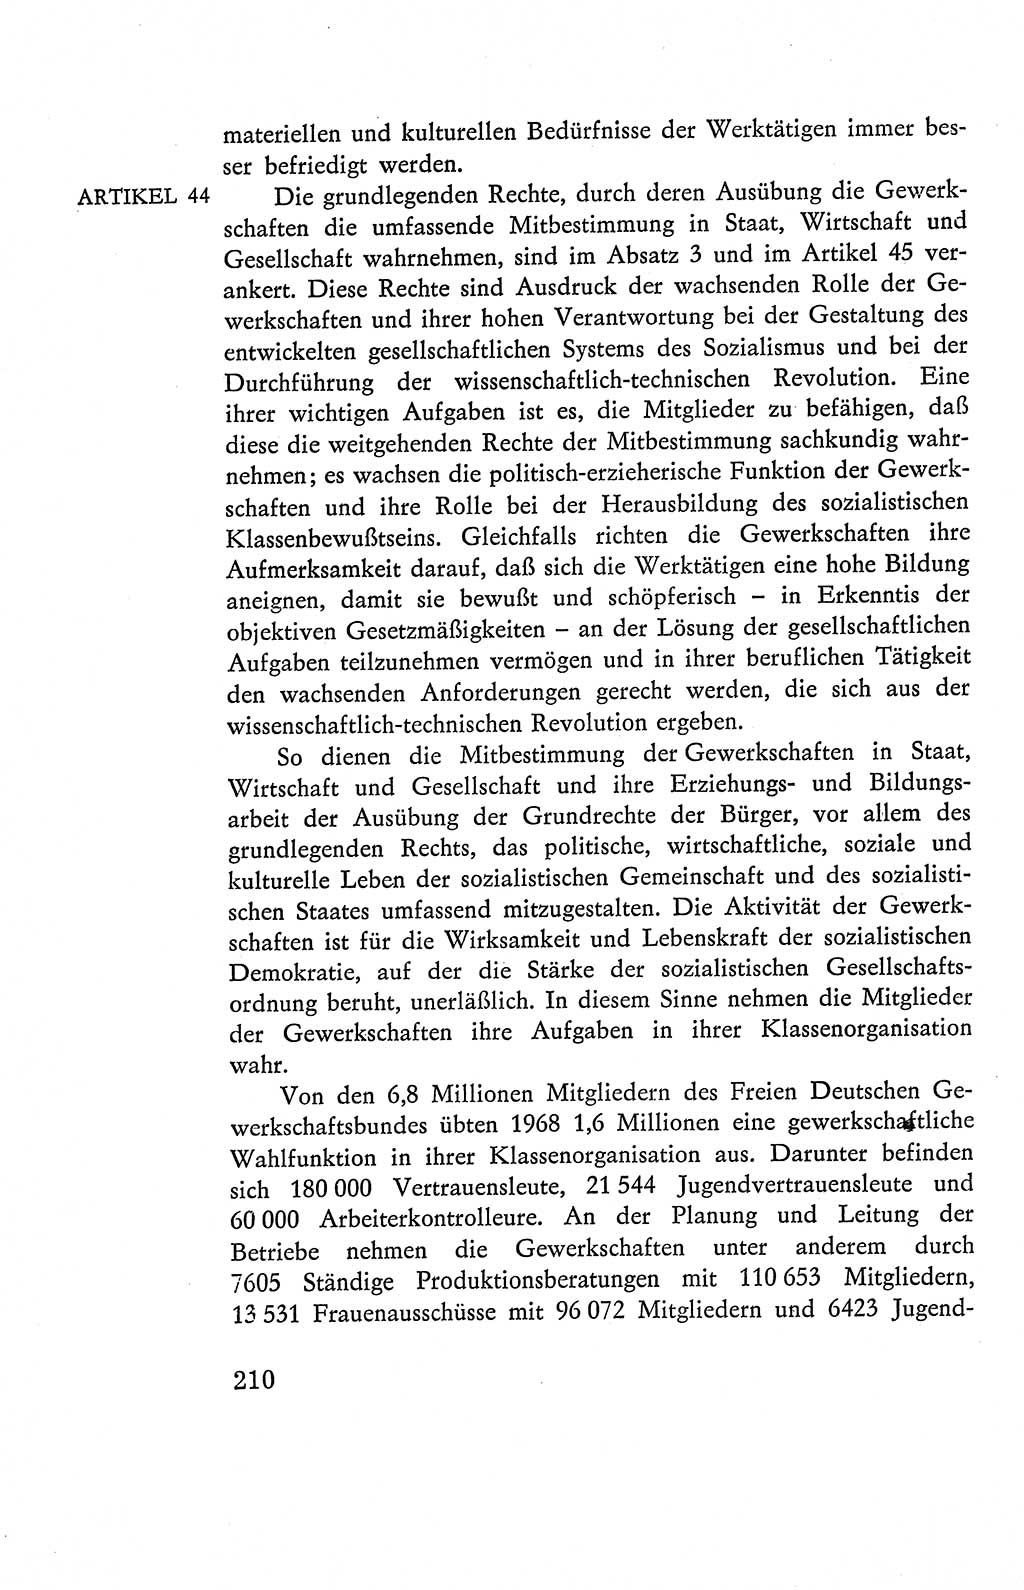 Verfassung der Deutschen Demokratischen Republik (DDR), Dokumente, Kommentar 1969, Band 2, Seite 210 (Verf. DDR Dok. Komm. 1969, Bd. 2, S. 210)